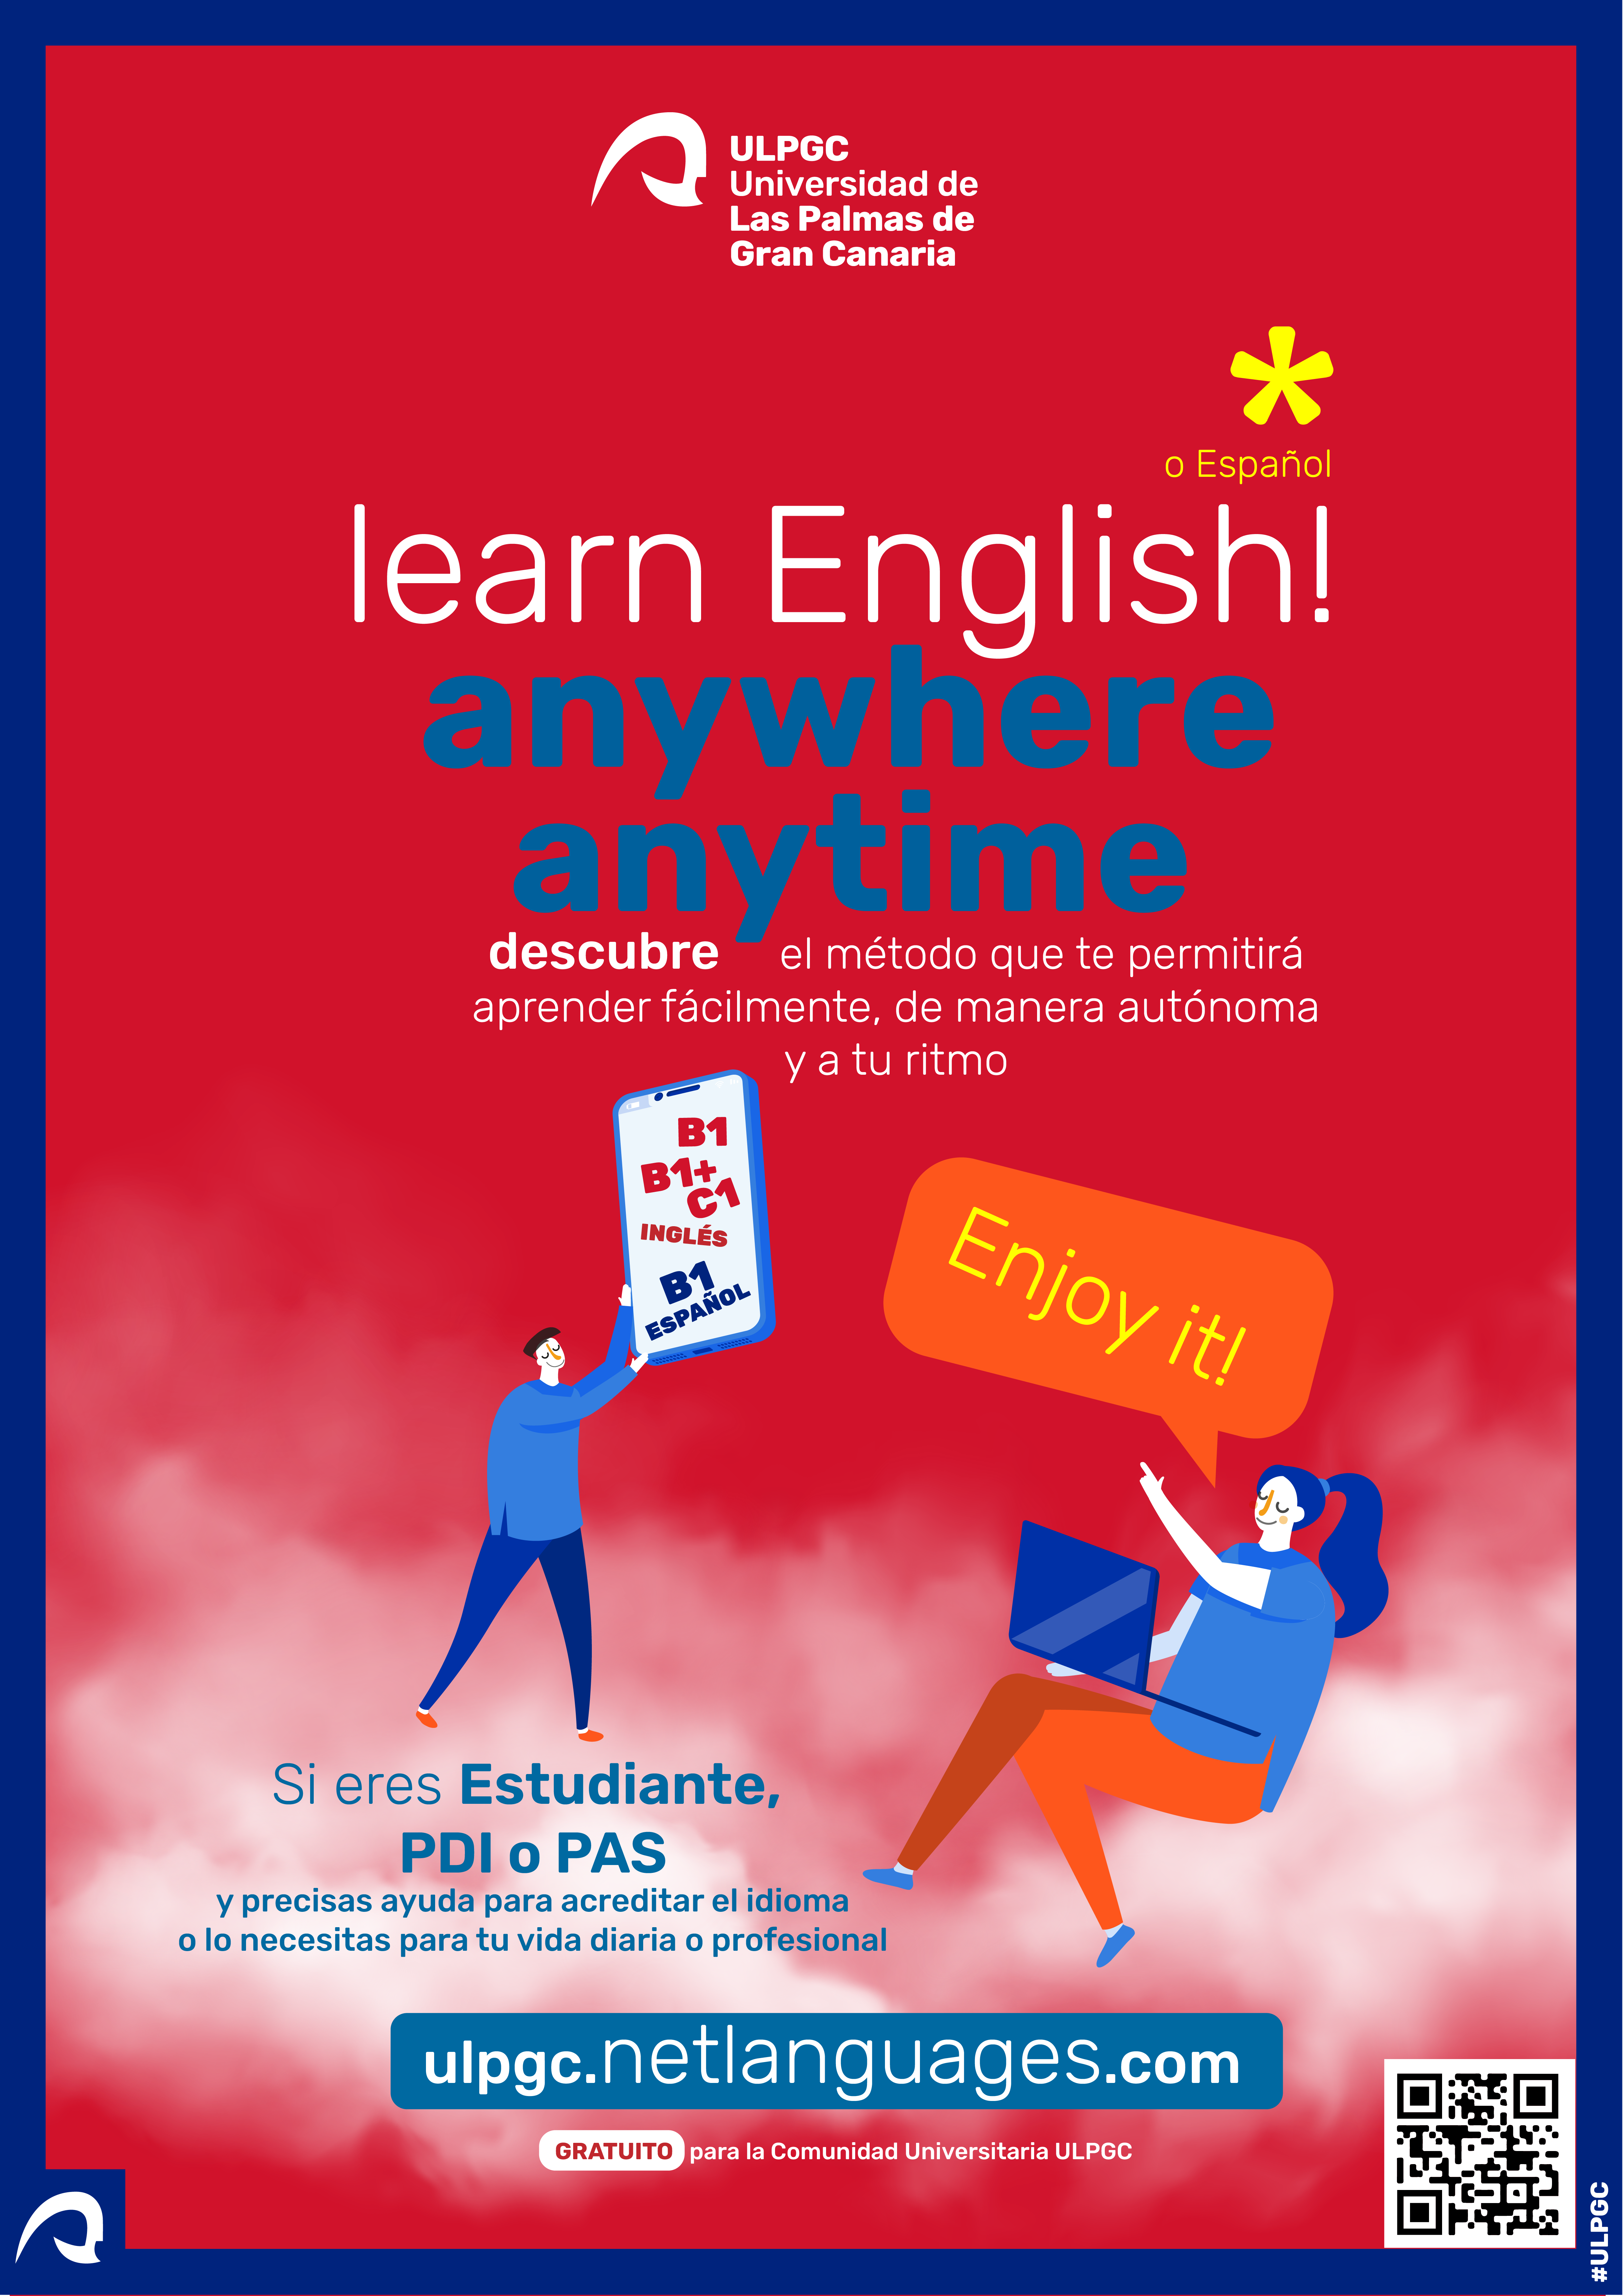 Una persona sostiene en su regazo un ordenador portátil y otra un cartel con niveles de lengua B1, B2, etc. Texto: Learn English! o español, anywhere, anytime